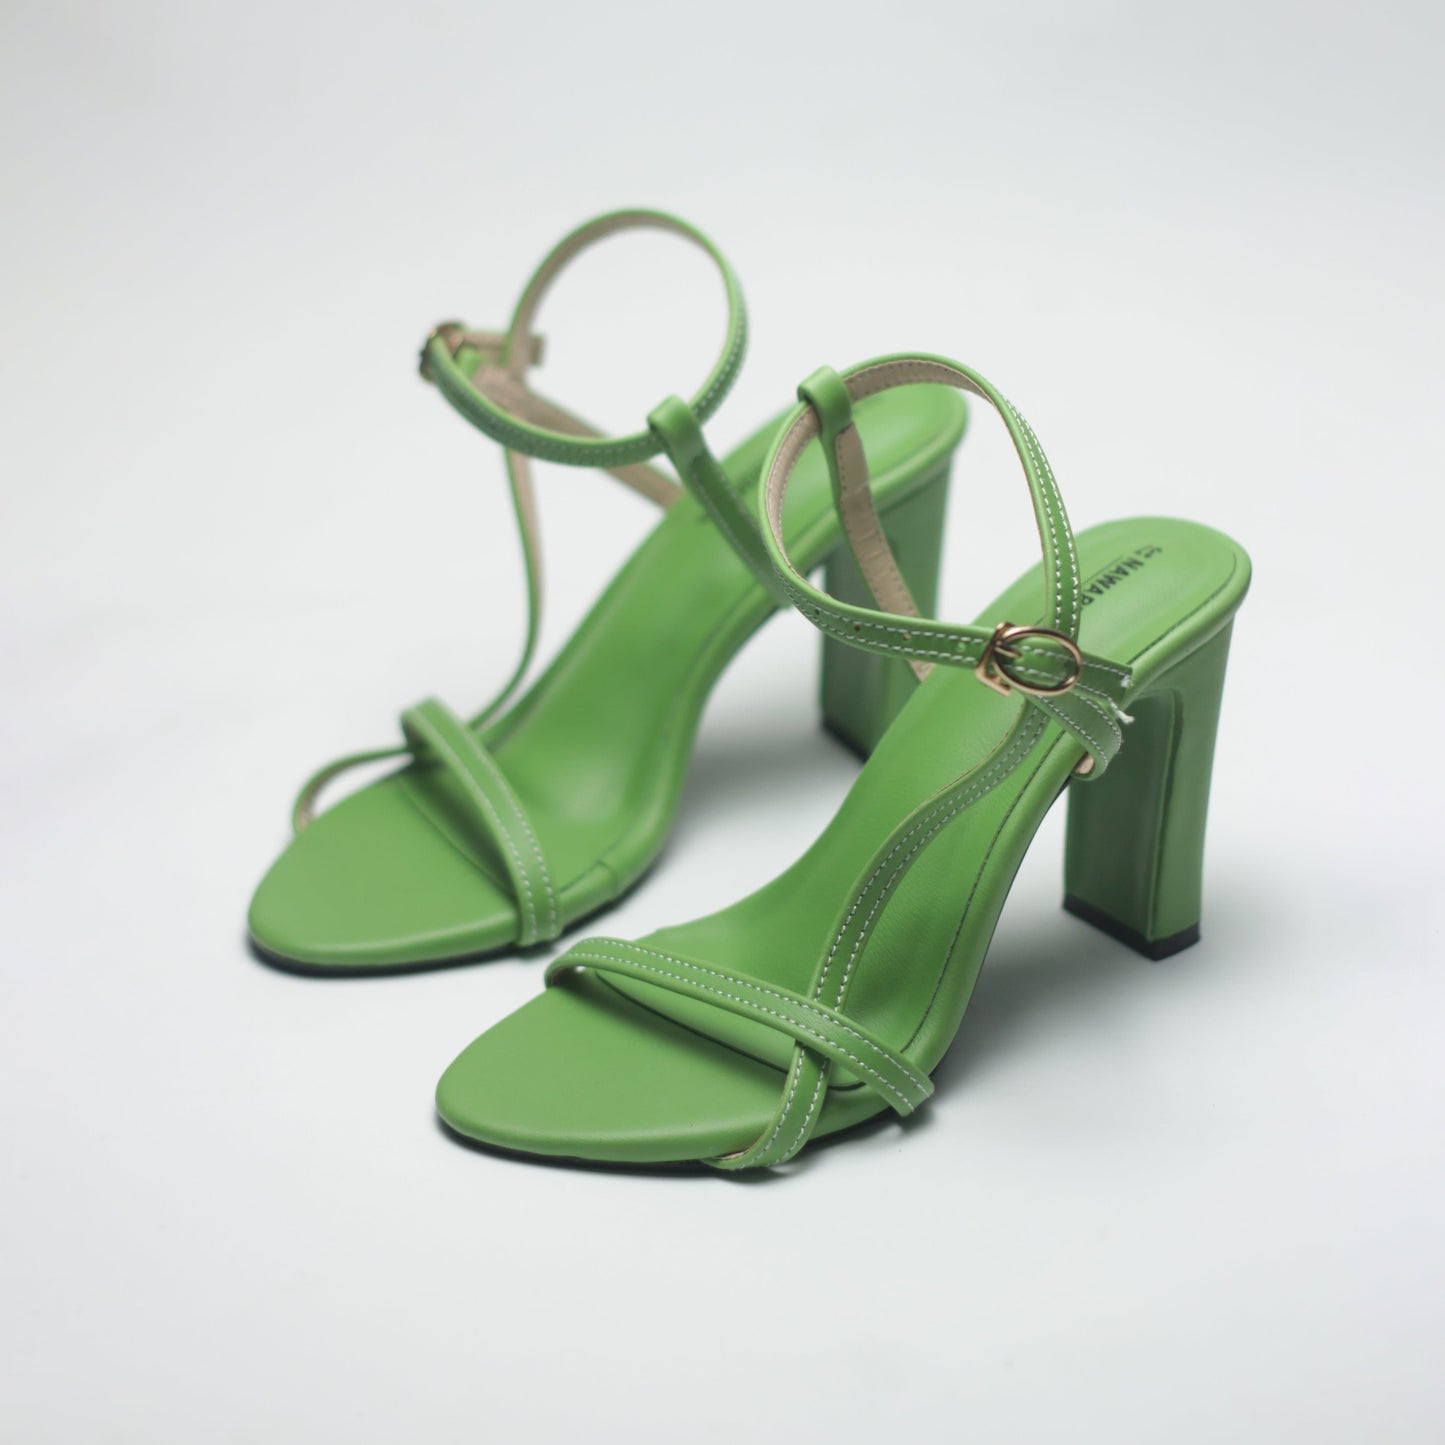 Nawabi Shoes BD Shoes 35 / Green / 2 Inch Block Heels Luxury Shoes